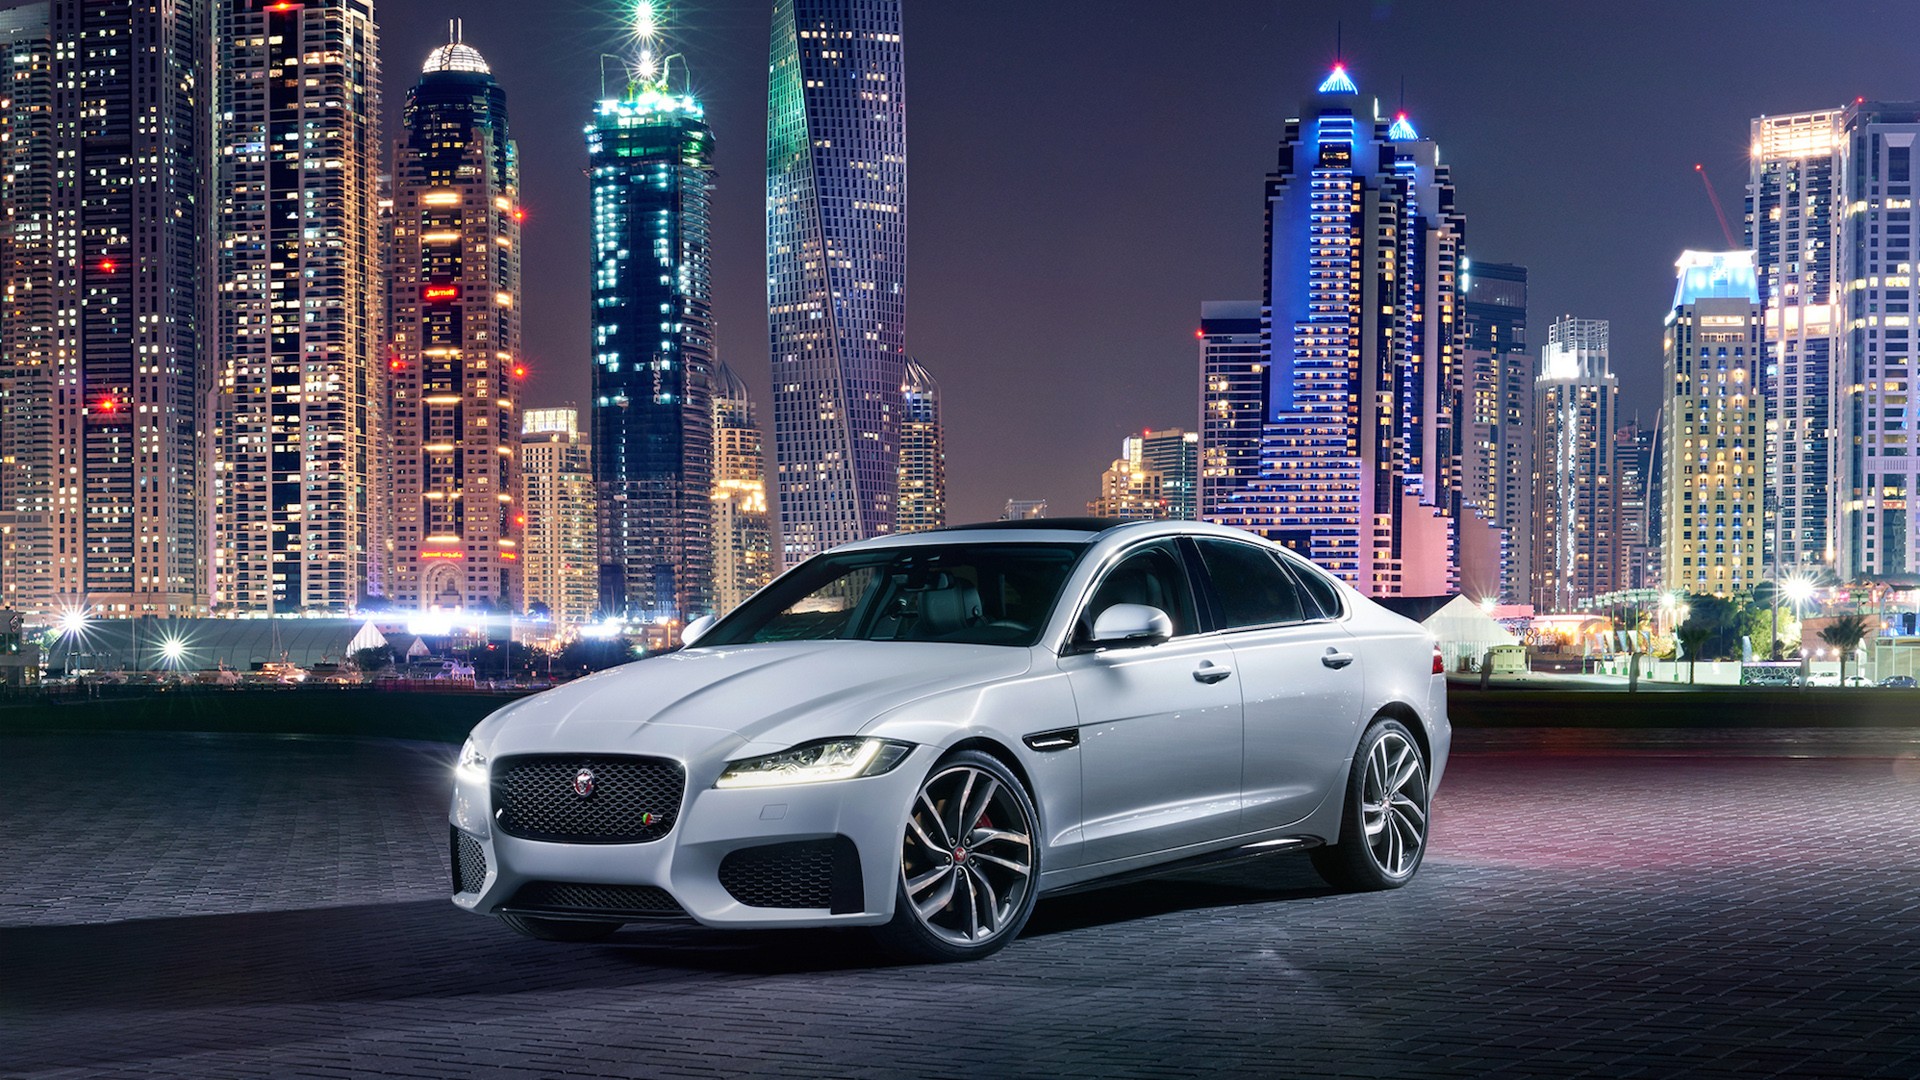 voitures jaguar fonds d'écran hd,véhicule terrestre,voiture,véhicule de luxe,véhicule,voiture de performance